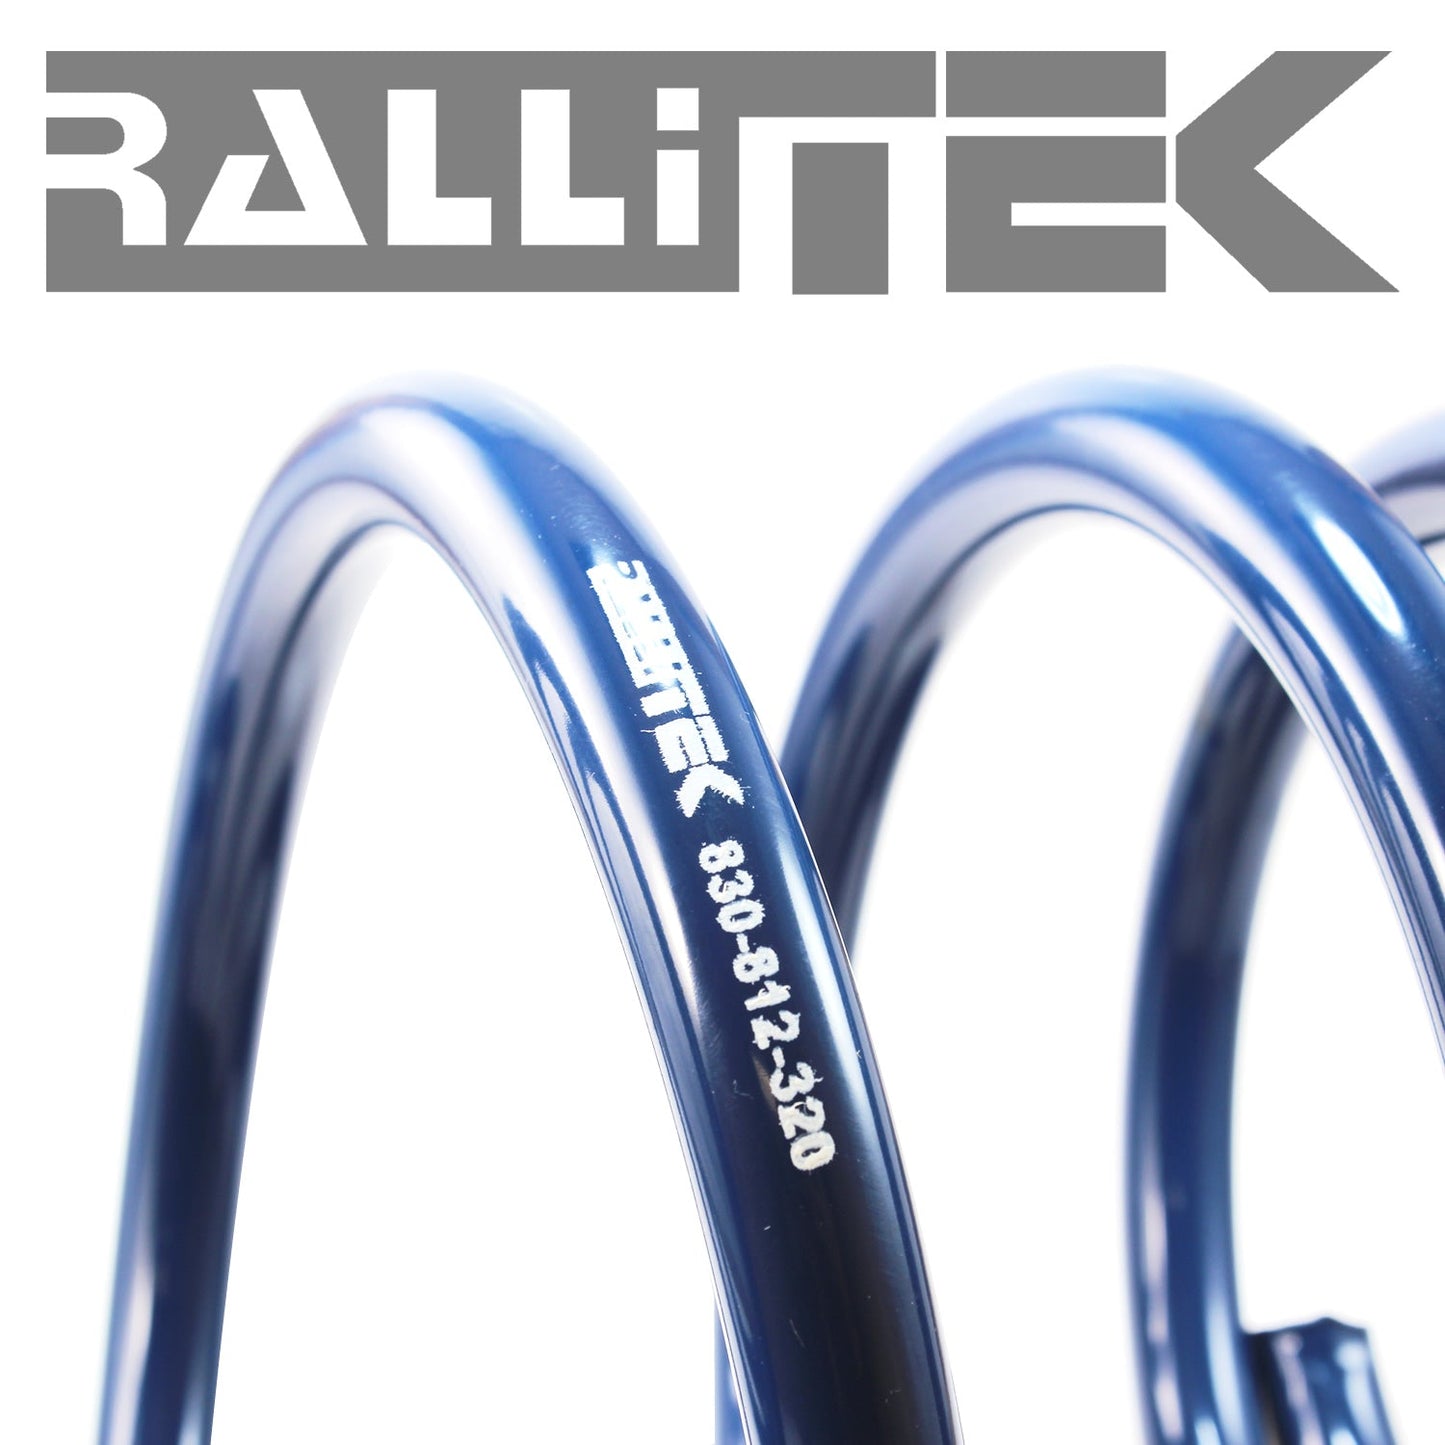 RalliTEK 0.25" Front Sport Springs & KYB Excel-G Struts Assembled - Crosstrek XV 2014-2017